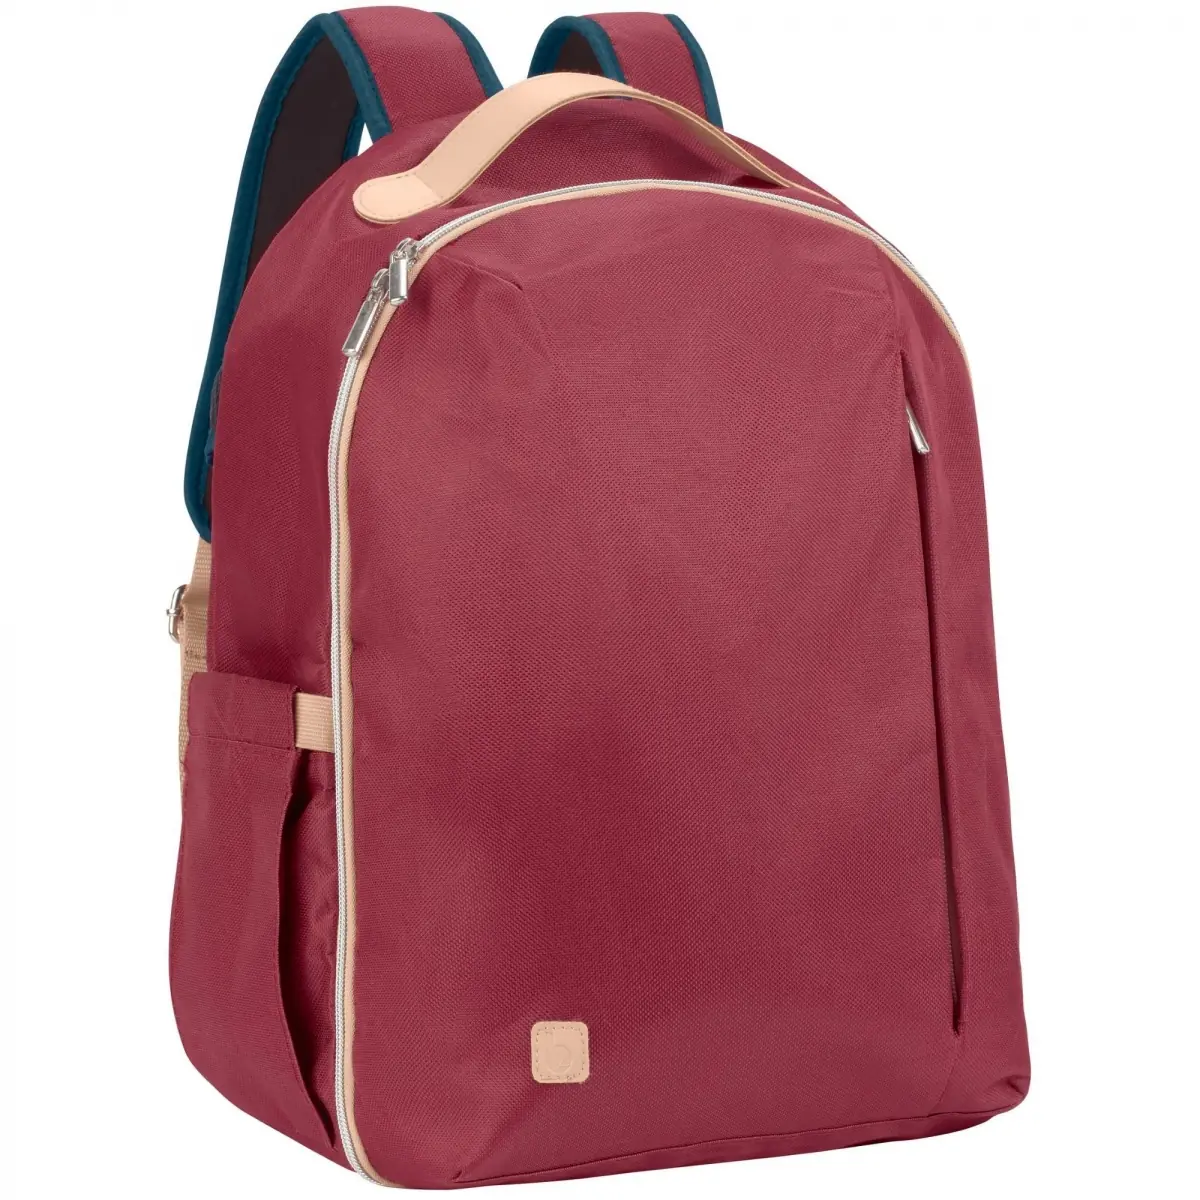 Babymoov Essential Backpack – Burgundy